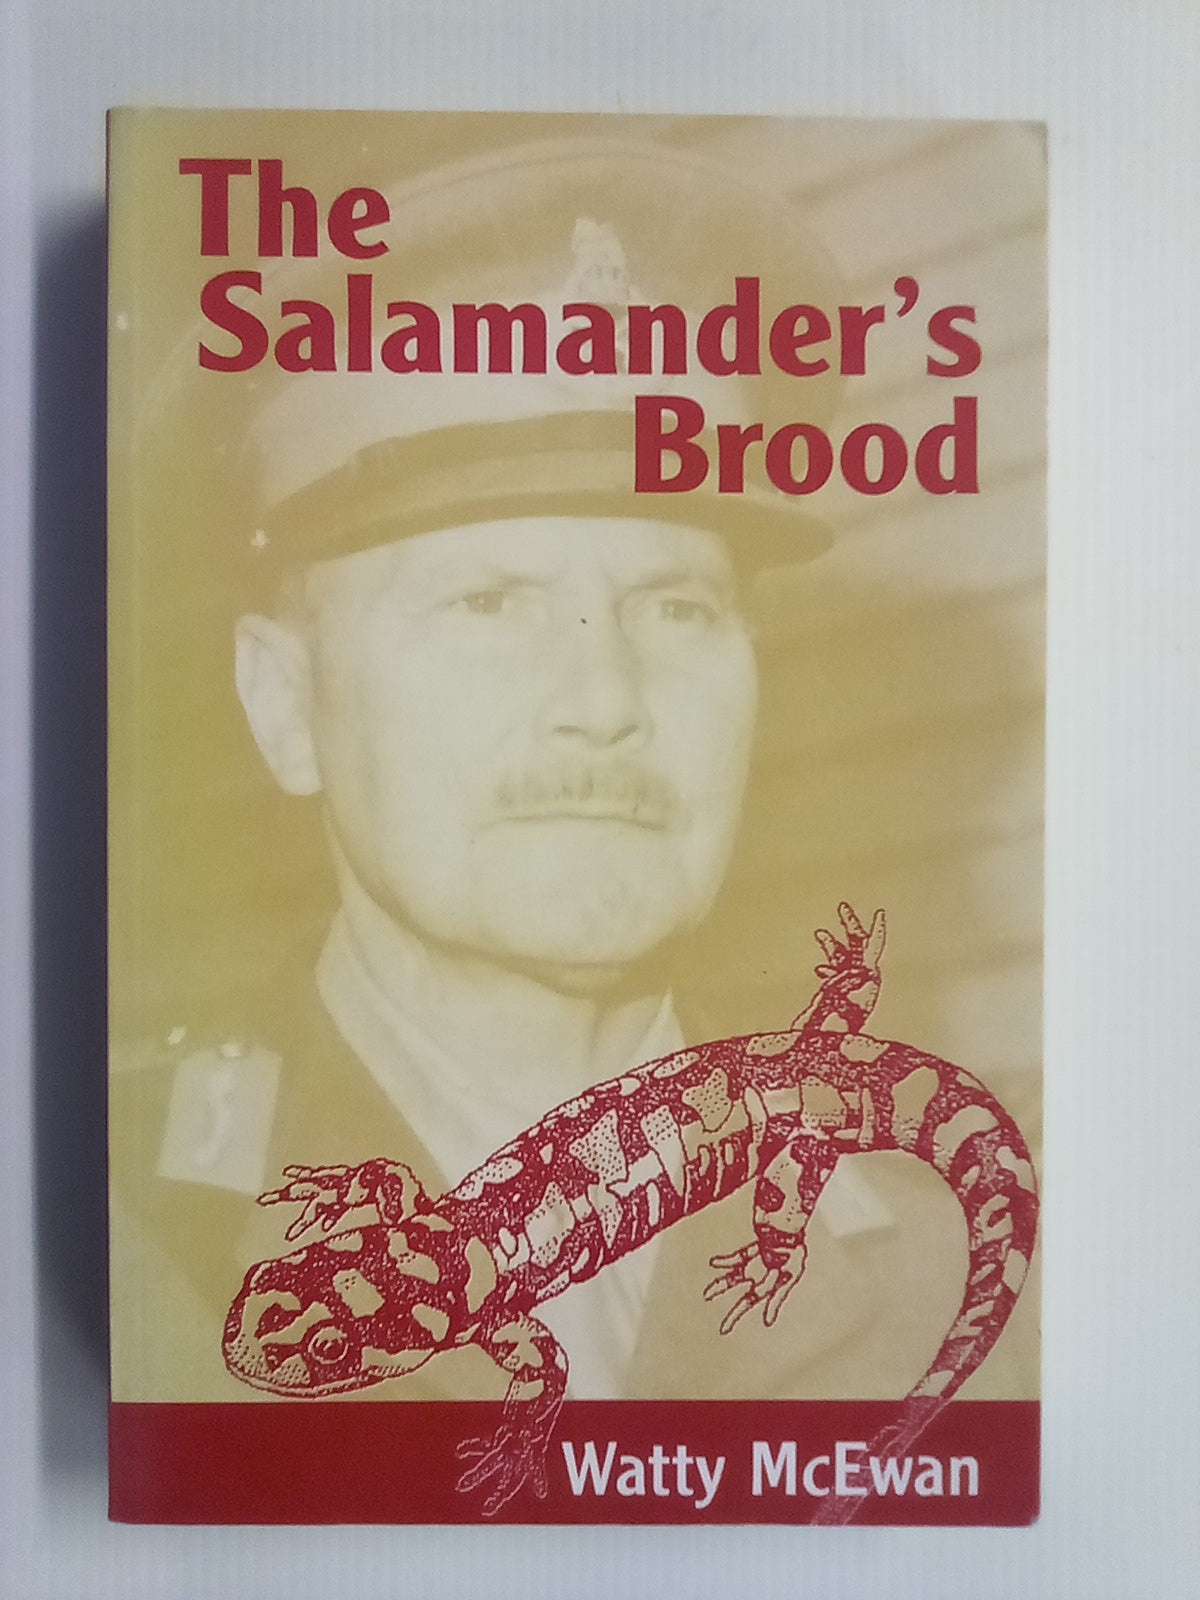 The Salamander's Brood (Freyberg) by Watty McEwan